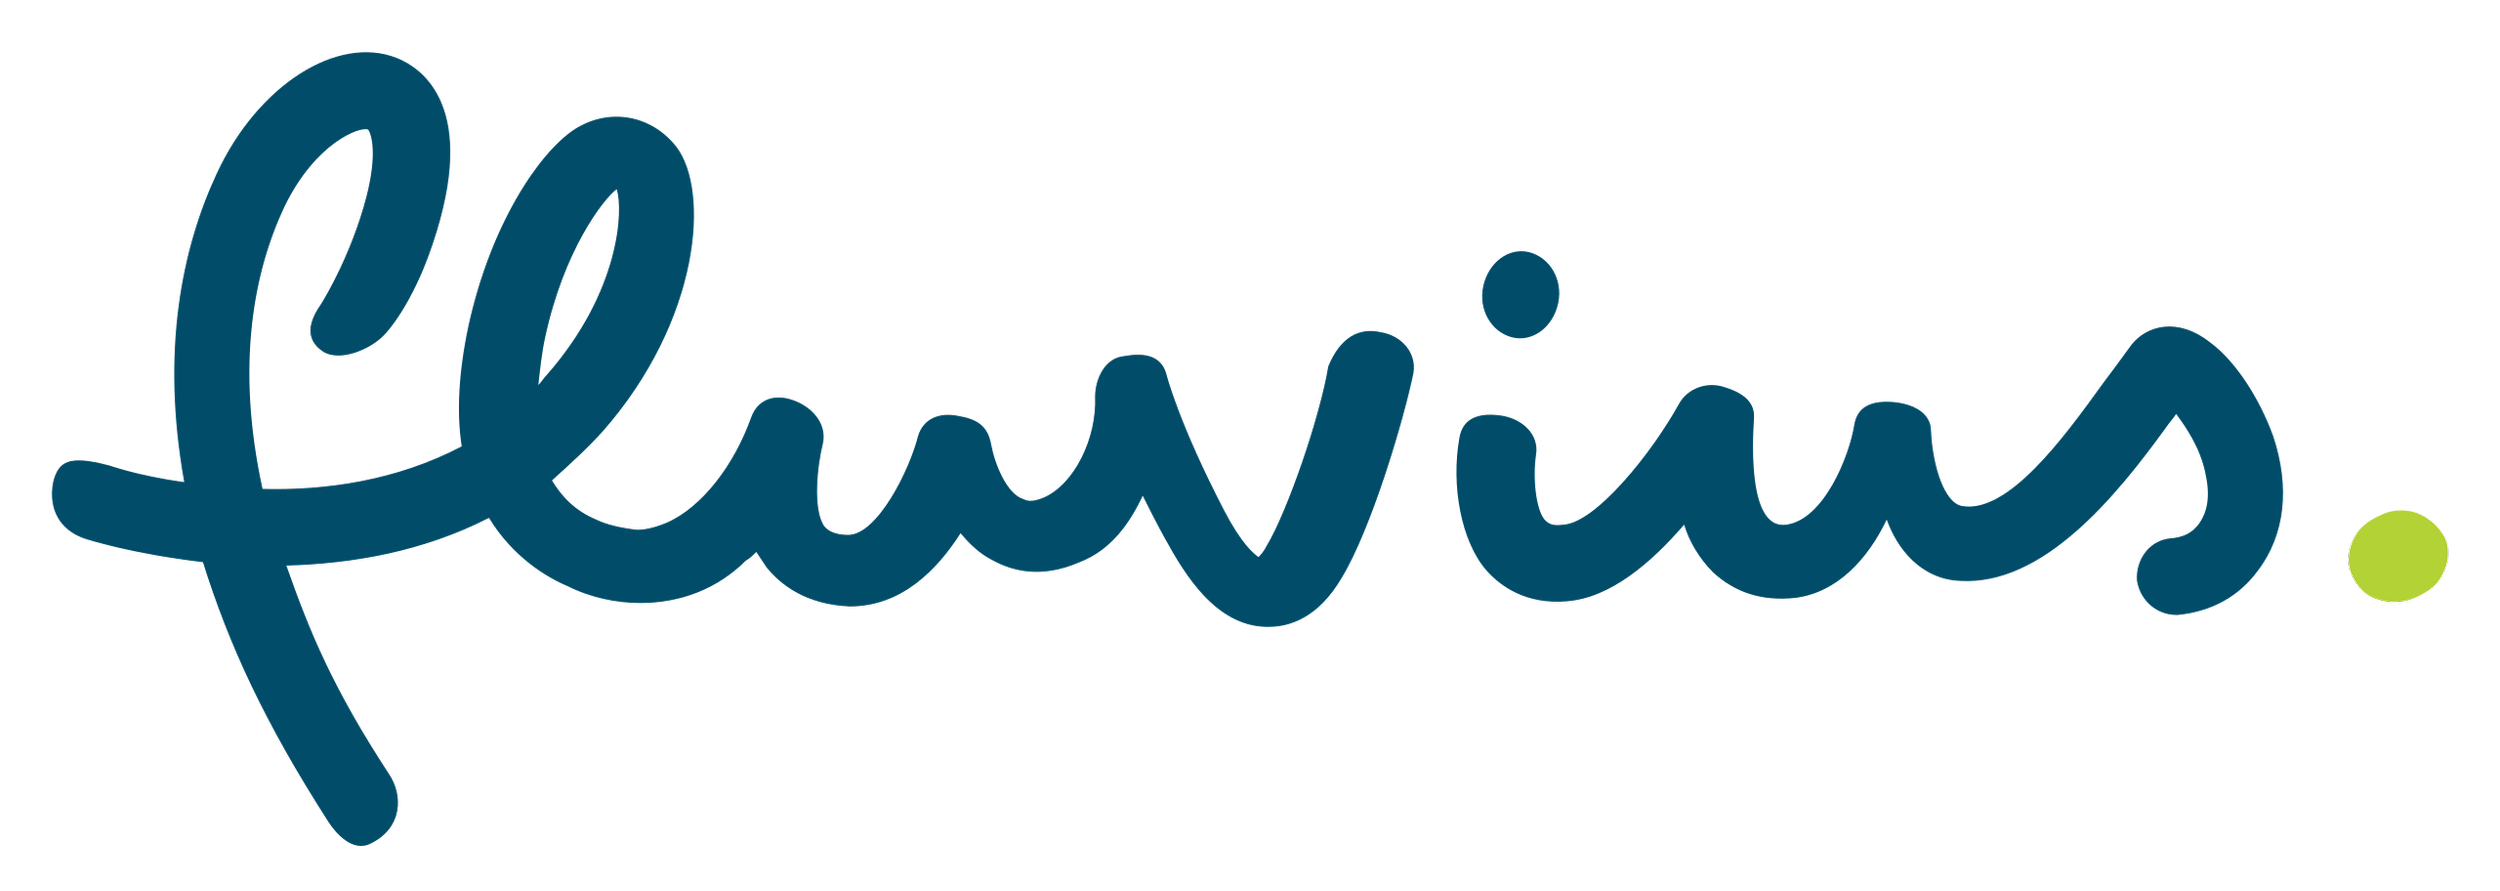 Fluvius_logo.svg.png